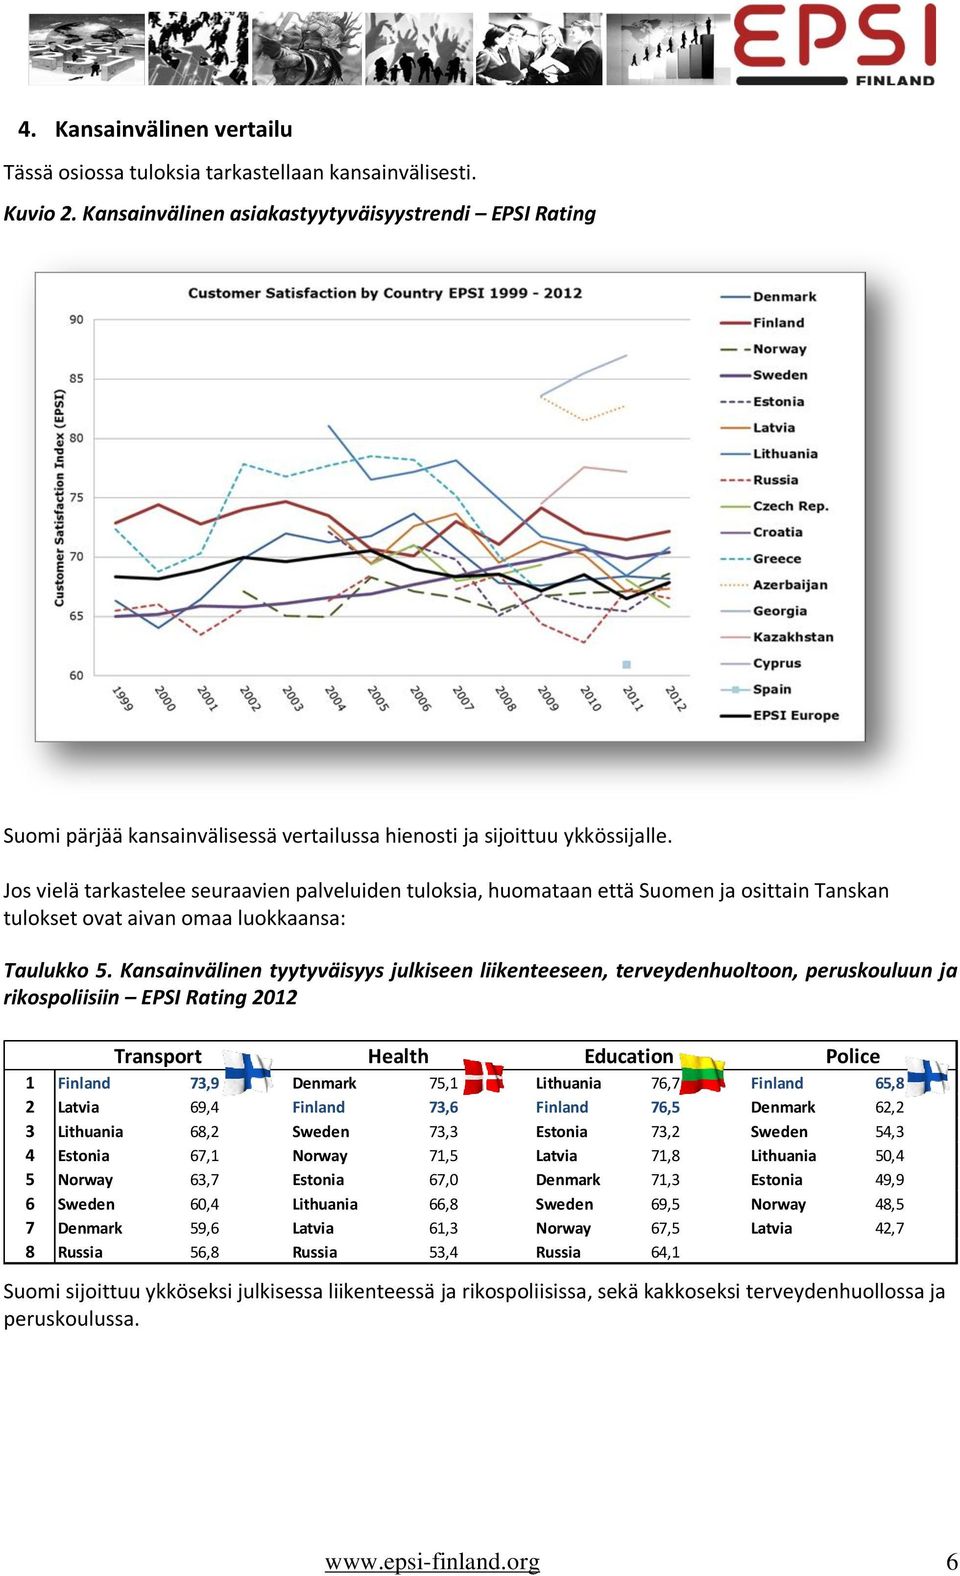 Jos vielä tarkastelee seuraavien palveluiden tuloksia, huomataan että Suomen ja osittain Tanskan tulokset ovat aivan omaa luokkaansa: Taulukko 5.